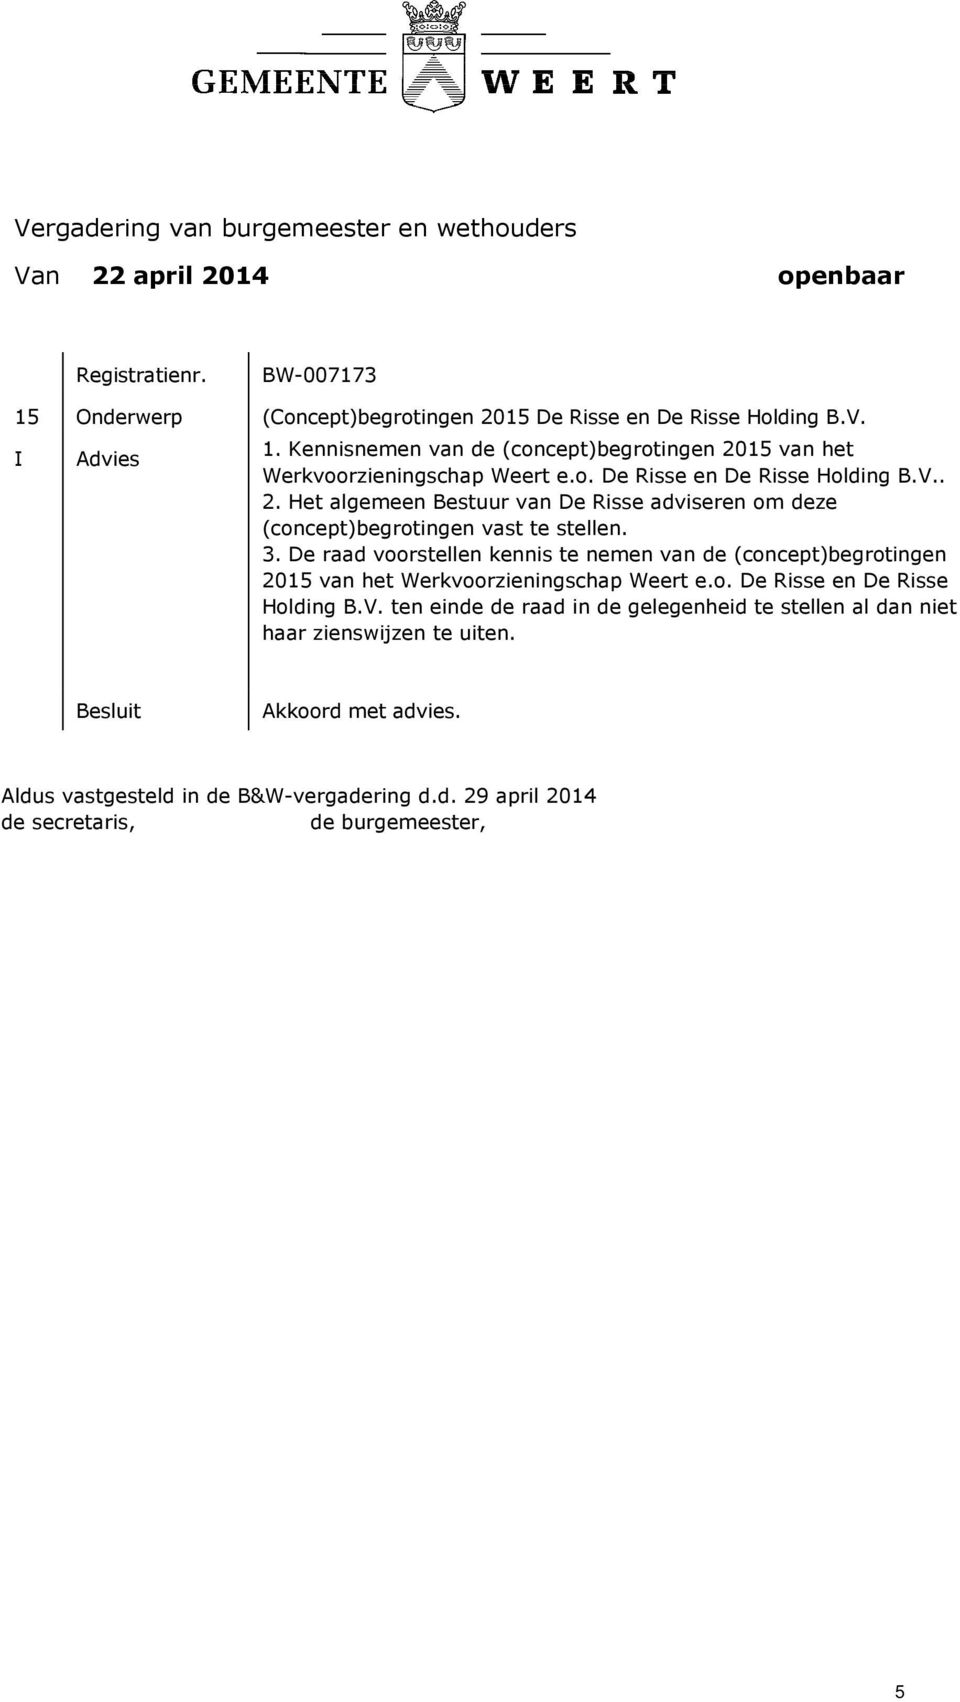 3. De raad voorstellen kennis te nemen van de (concept)begrotingen 2015 van het Werkvoorzieningschap Weert e.o. De Risse en De Risse Holding B.V.